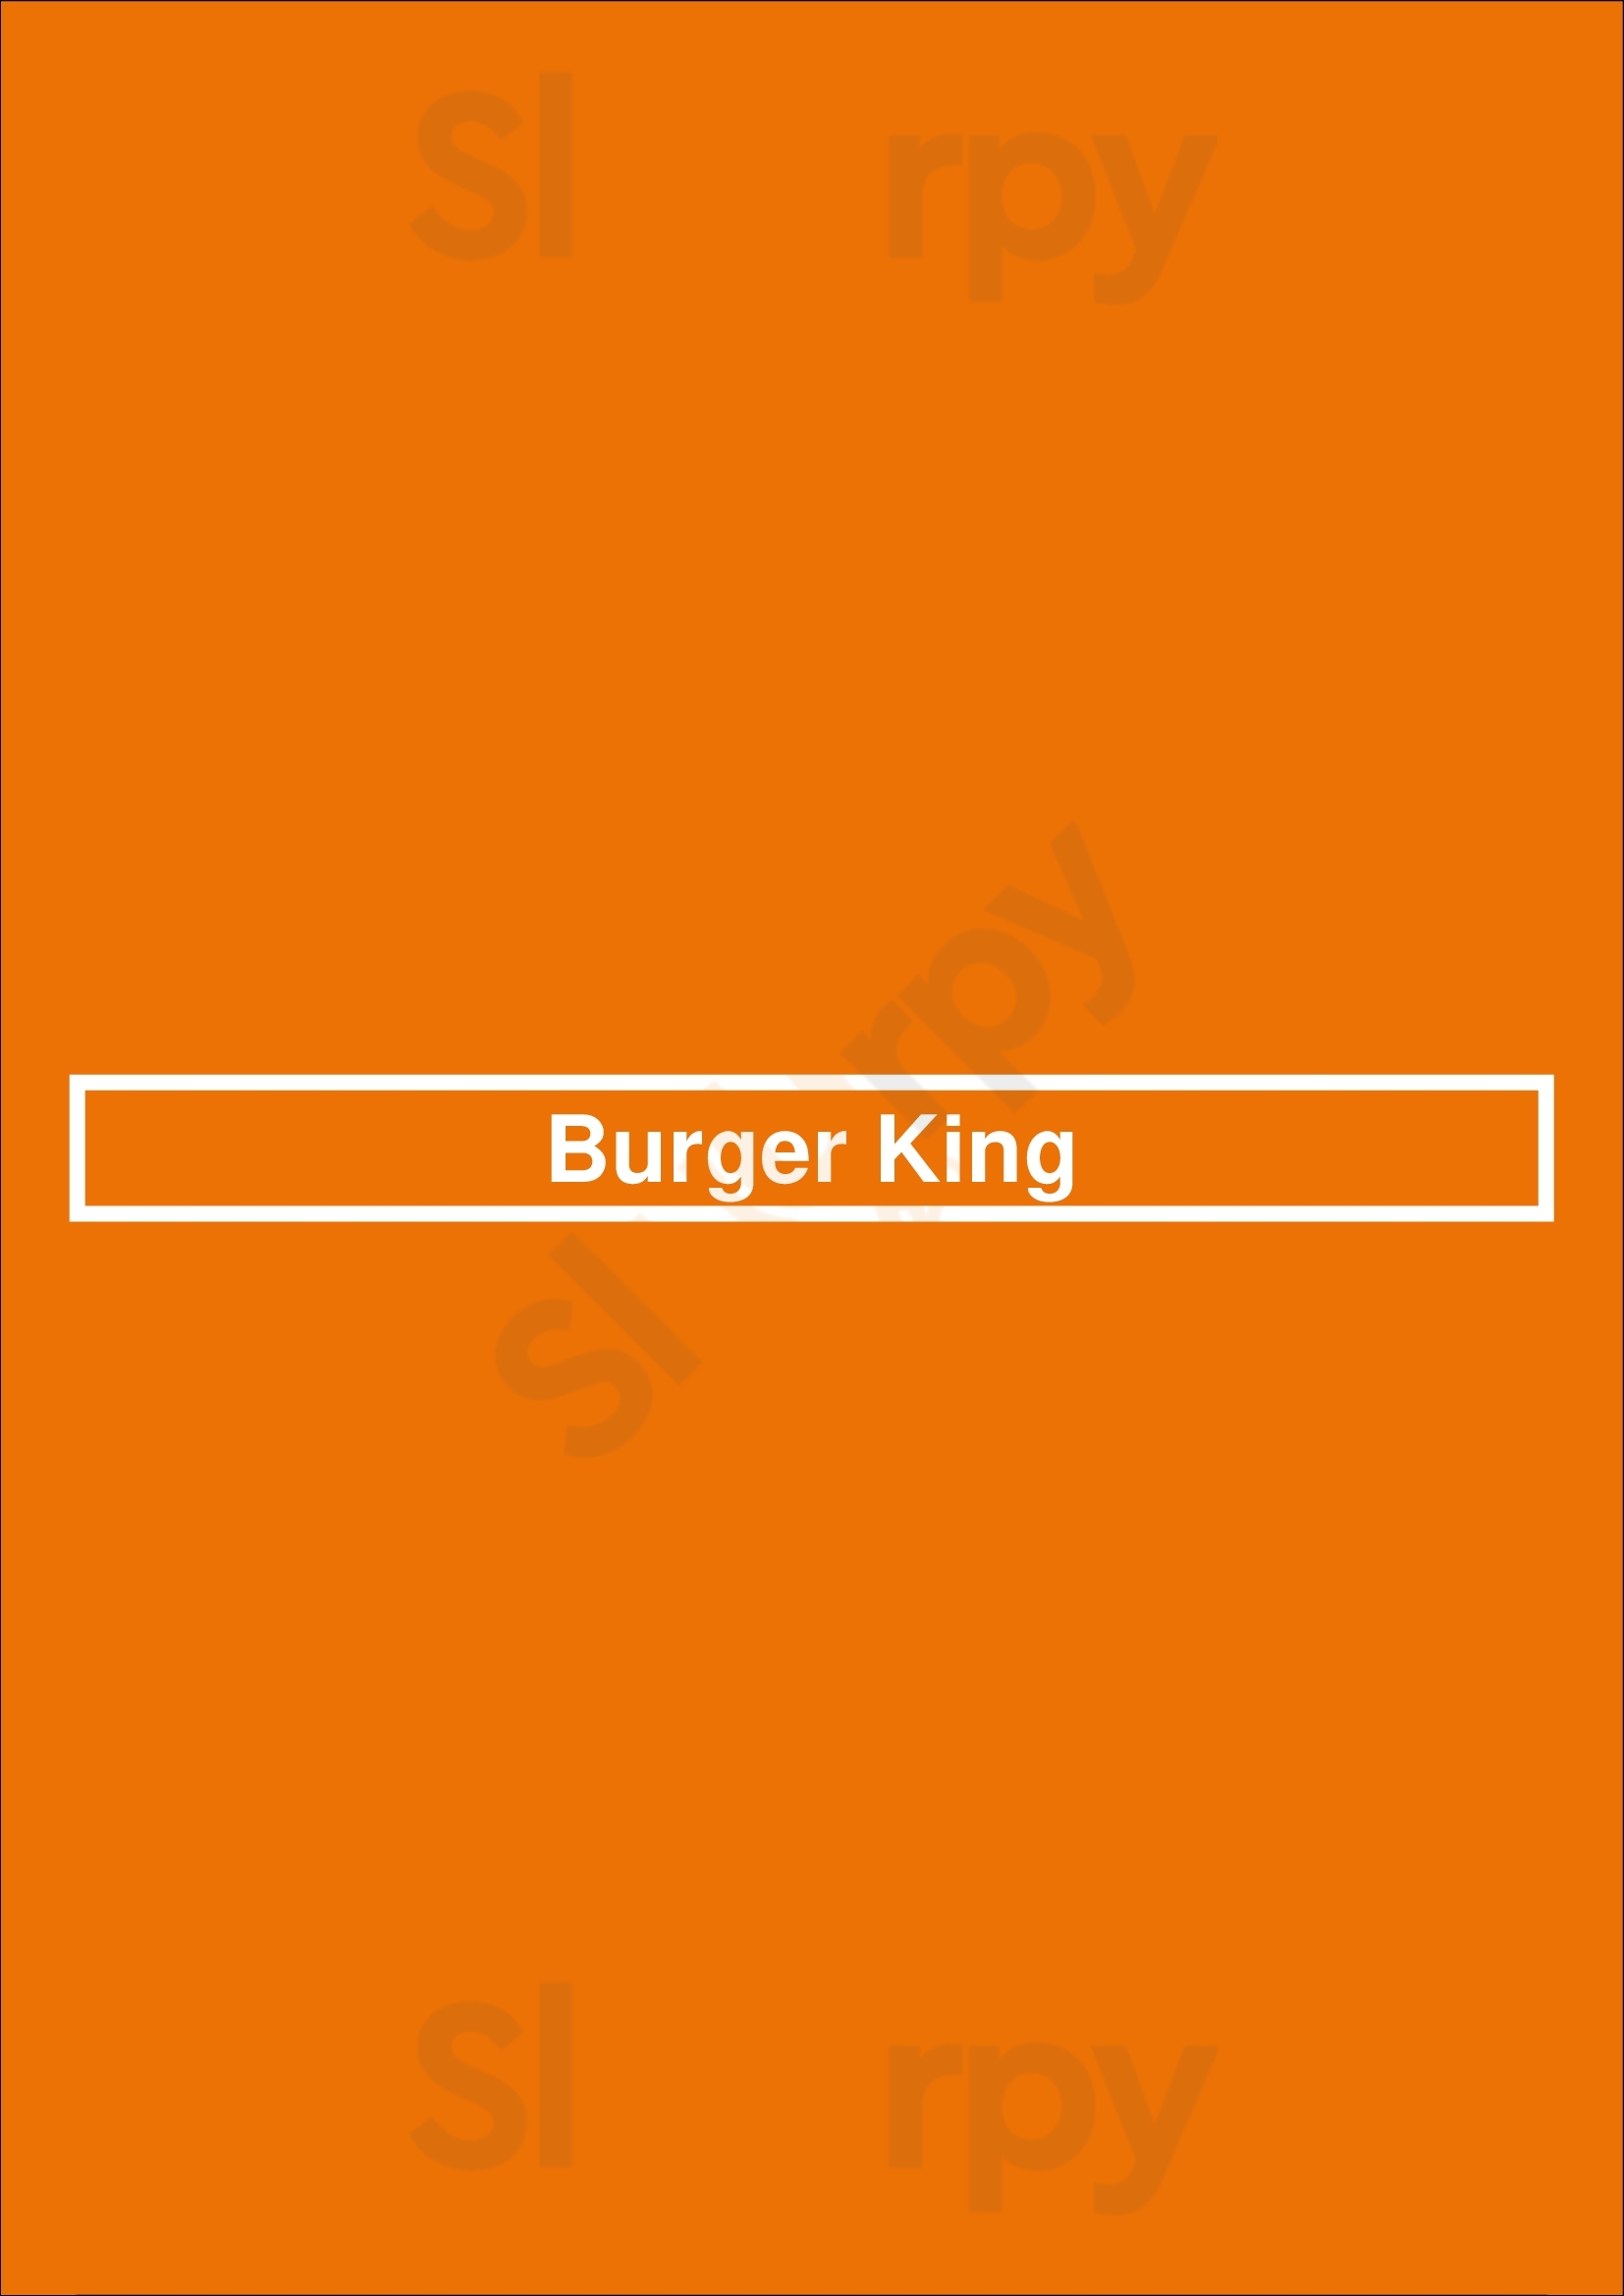 Burger King Staten Island Menu - 1